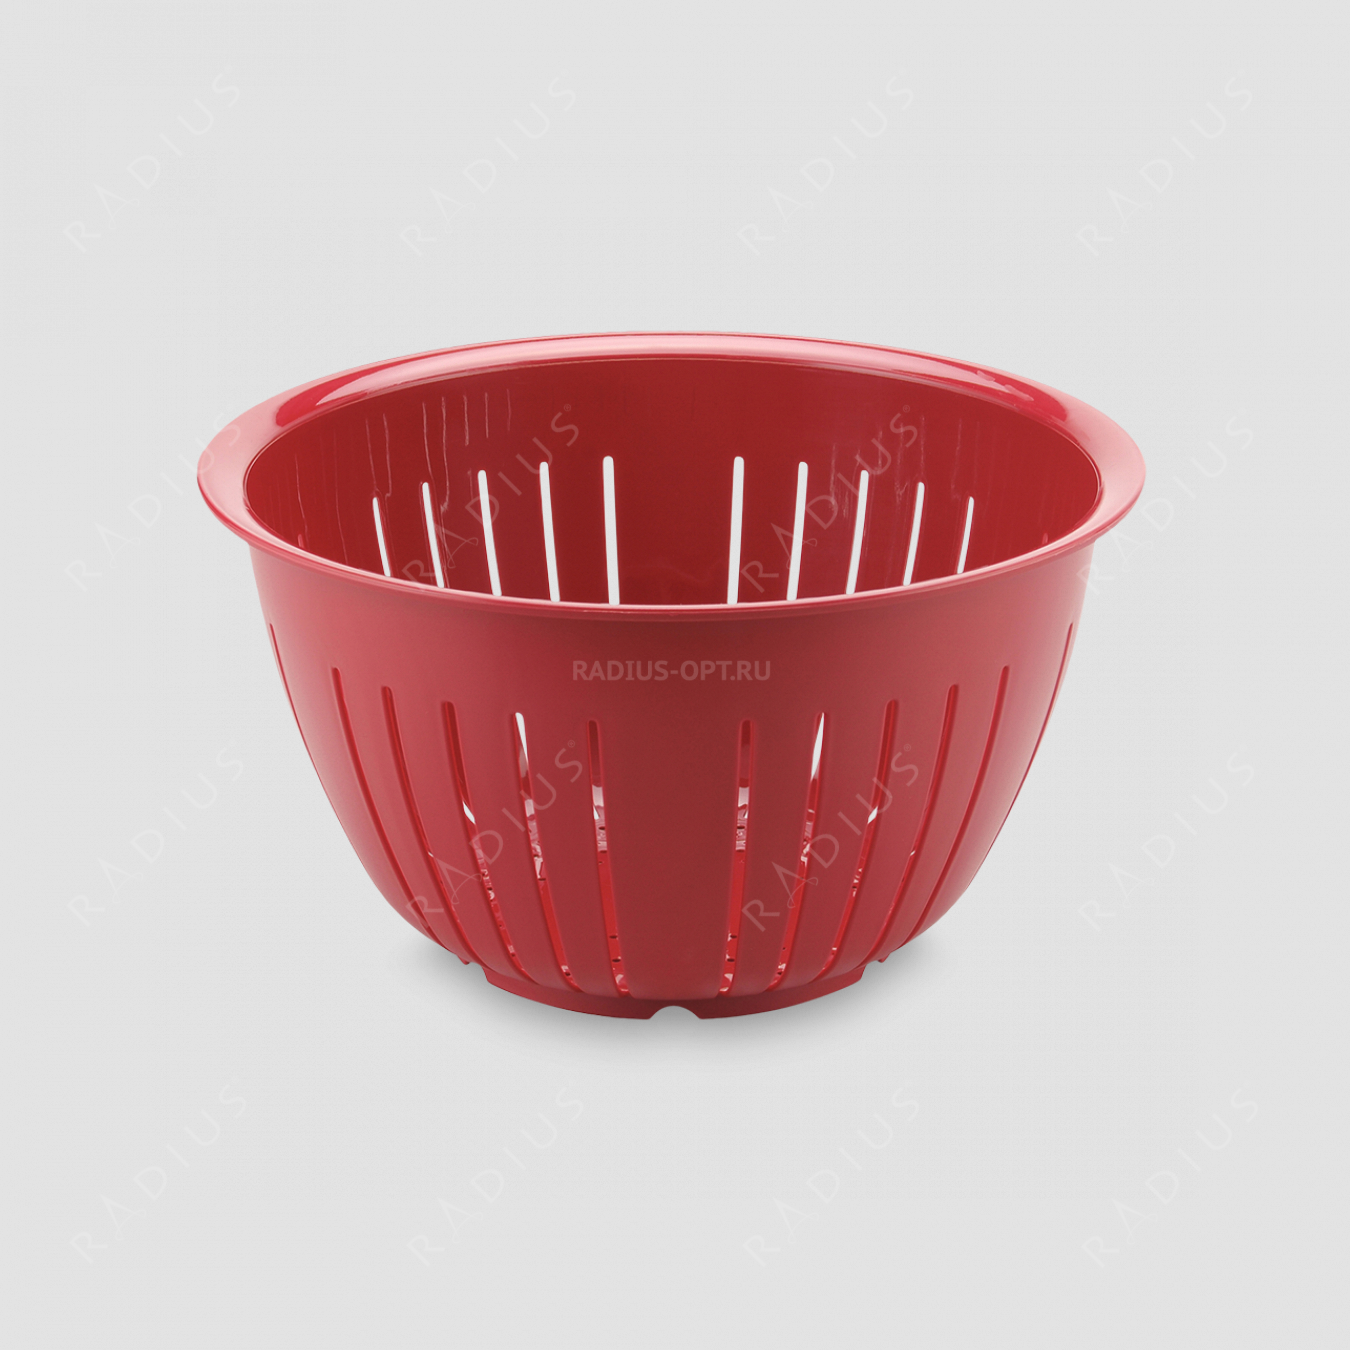 Дуршлаг, объем 4,3 л, диаметр 23 см, цвет - красный, серия Plastic tools, Westmark, Германия